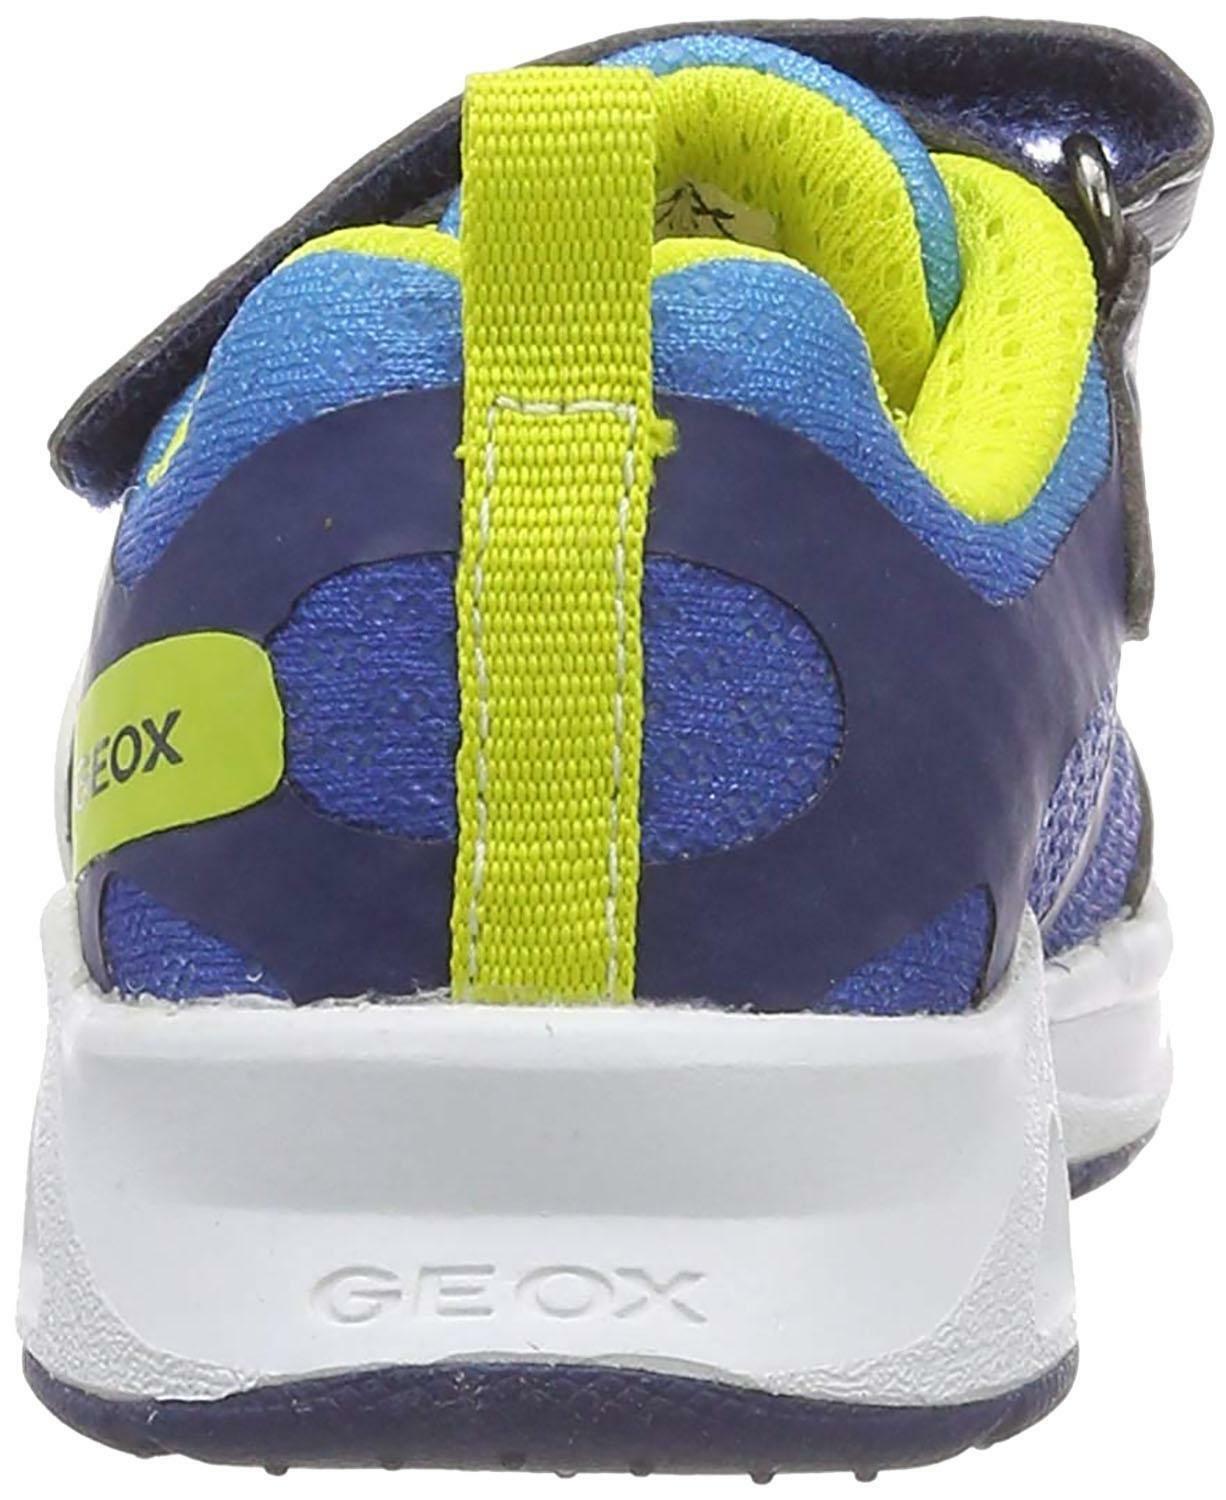 geox geox j dakin scarpe sportive bambino blu j929fac0749